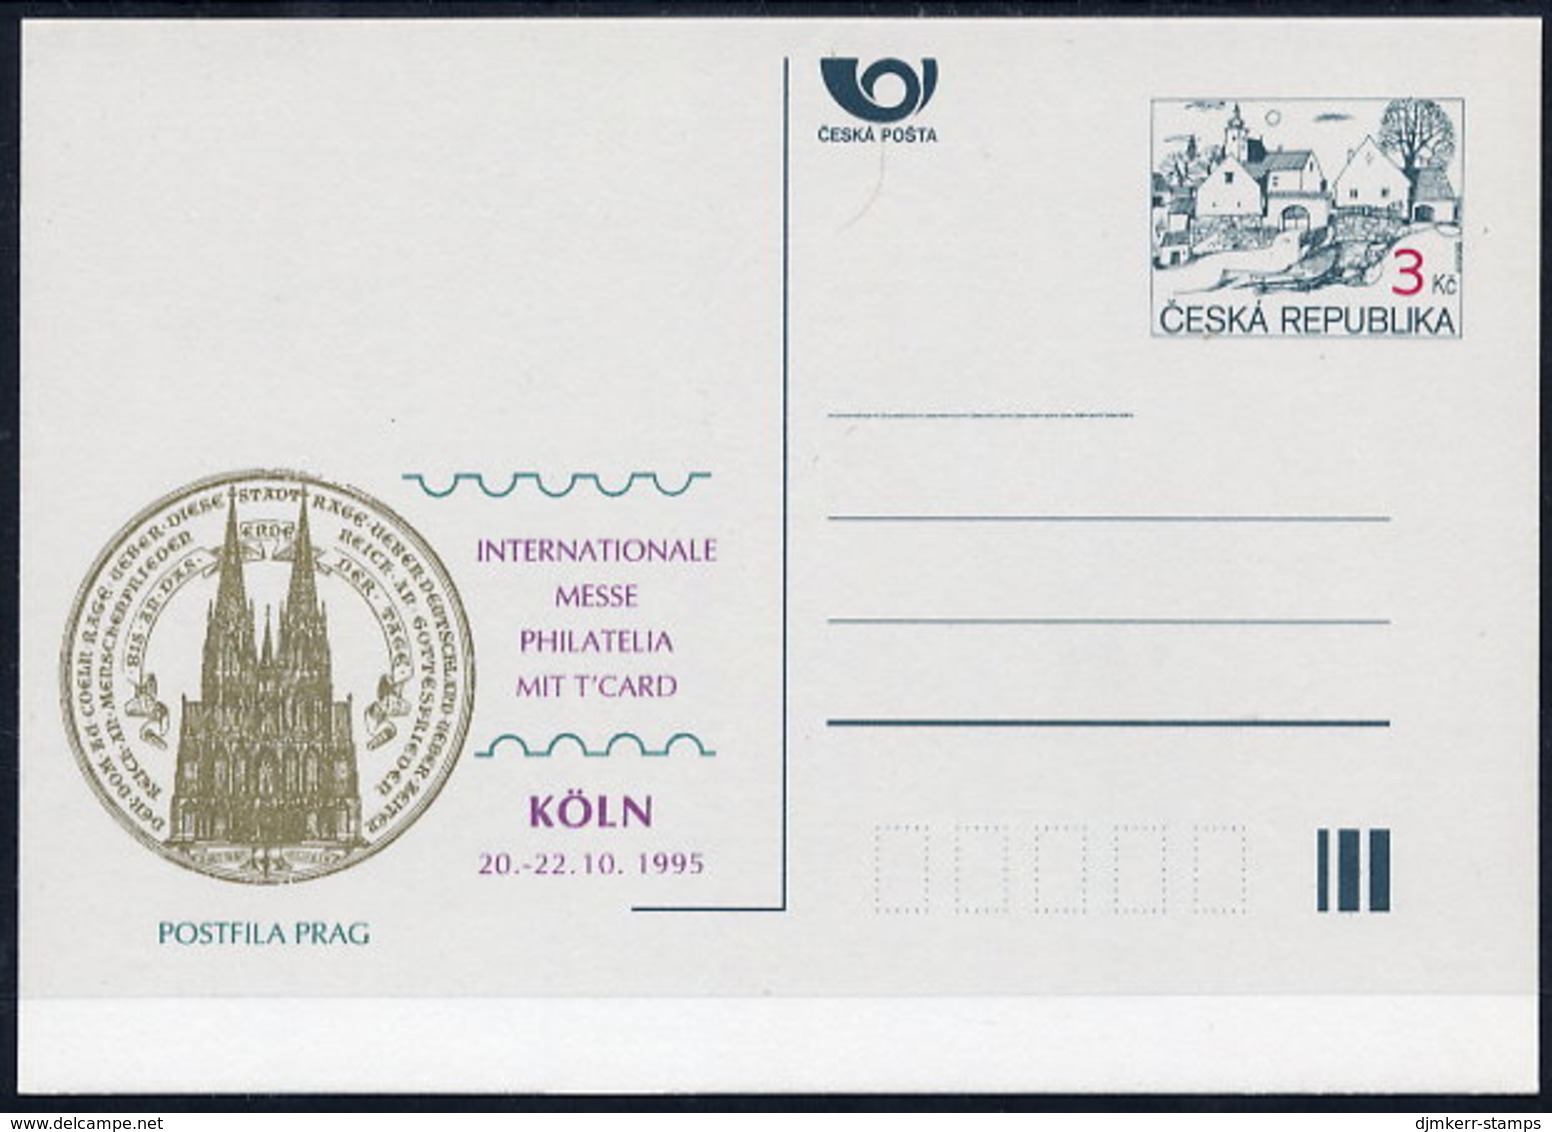 CZECH REPUBLIC 1995 3 Kc.postcard Köln '95 Unused.  Michel P7-A5 - Cartoline Postali